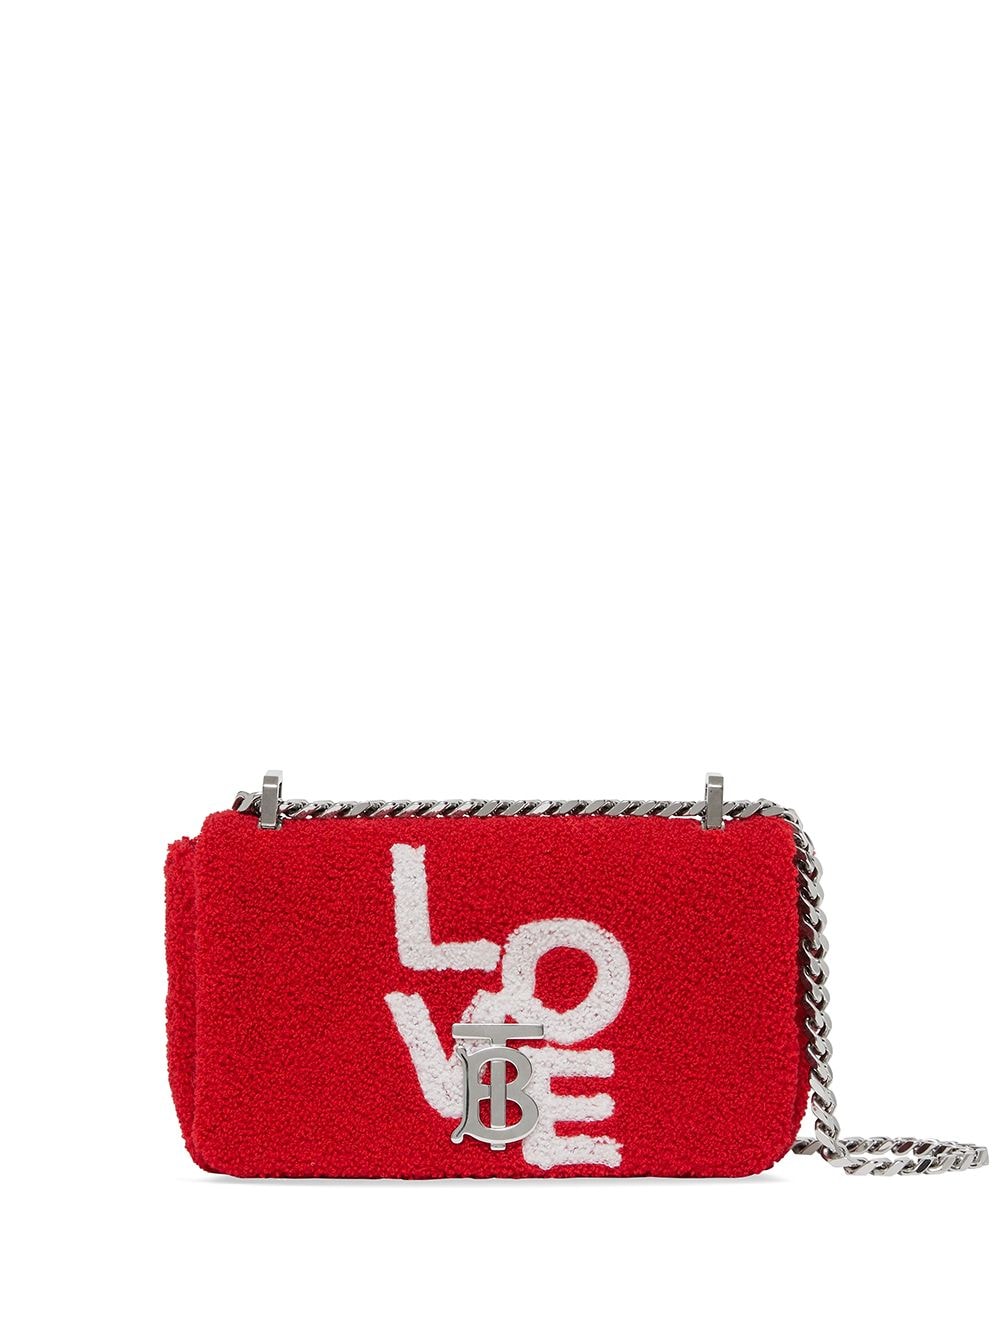 фото Burberry махровая мини-сумка lola с принтом love